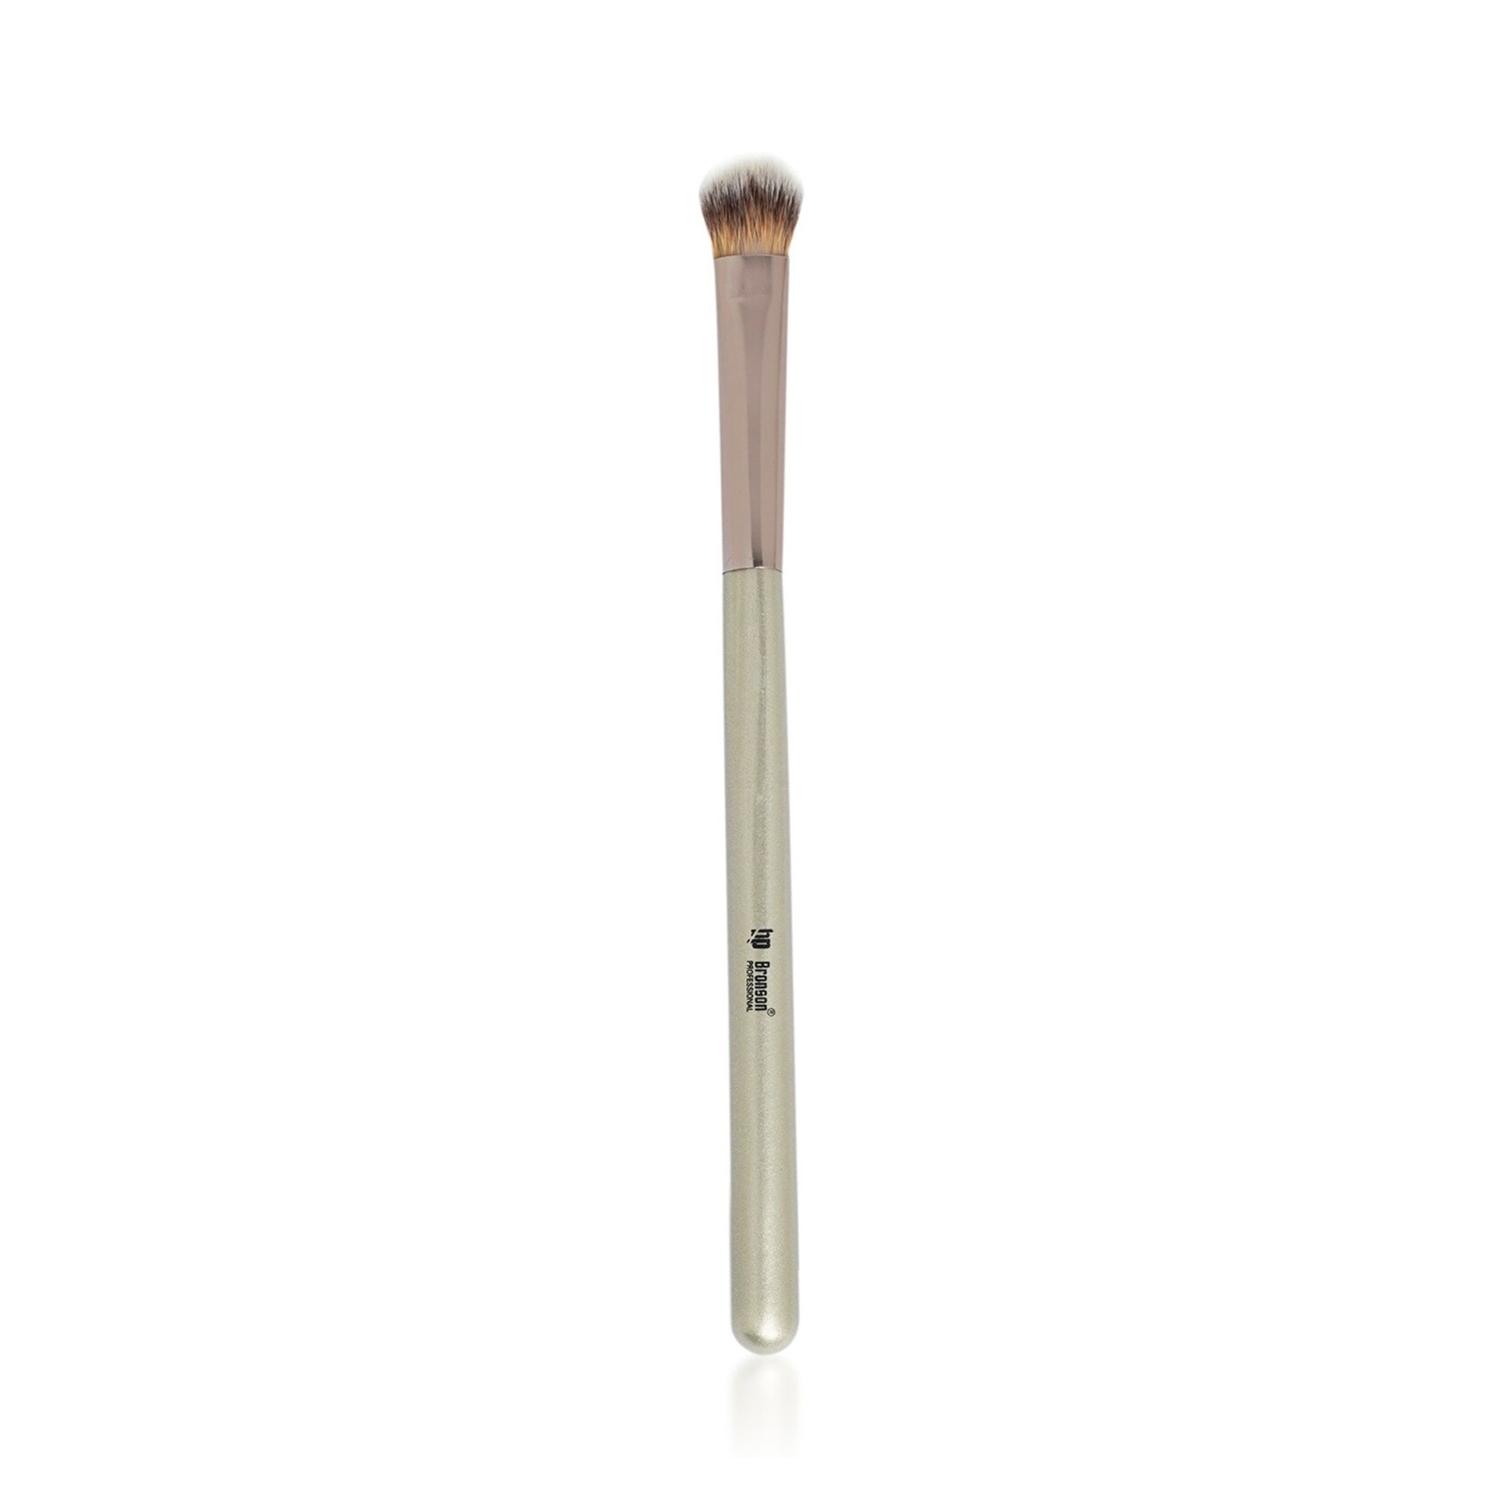 Bronson Professional | Bronson Professional Classic Eye Shadow Blending Application Makeup Brush - Silver, Pink